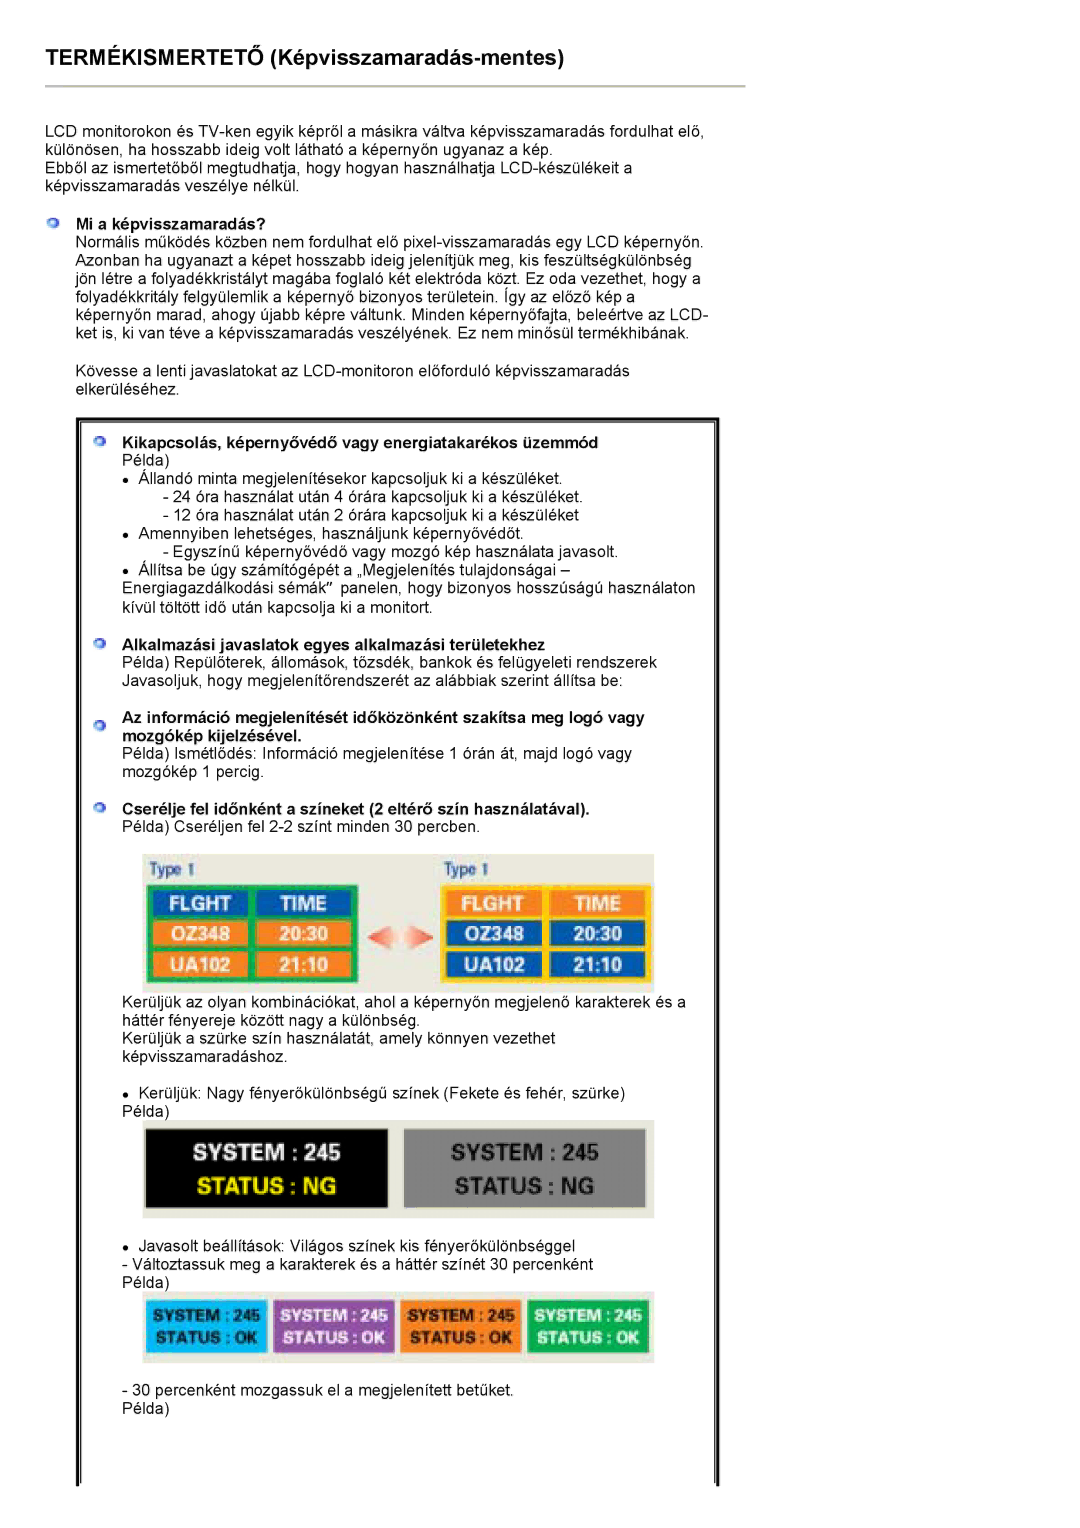 Samsung PO24FSSSS/EDC manual Mi a képvisszamaradás?, Kikapcsolás, képernyővédő vagy energiatakarékos üzemmód 